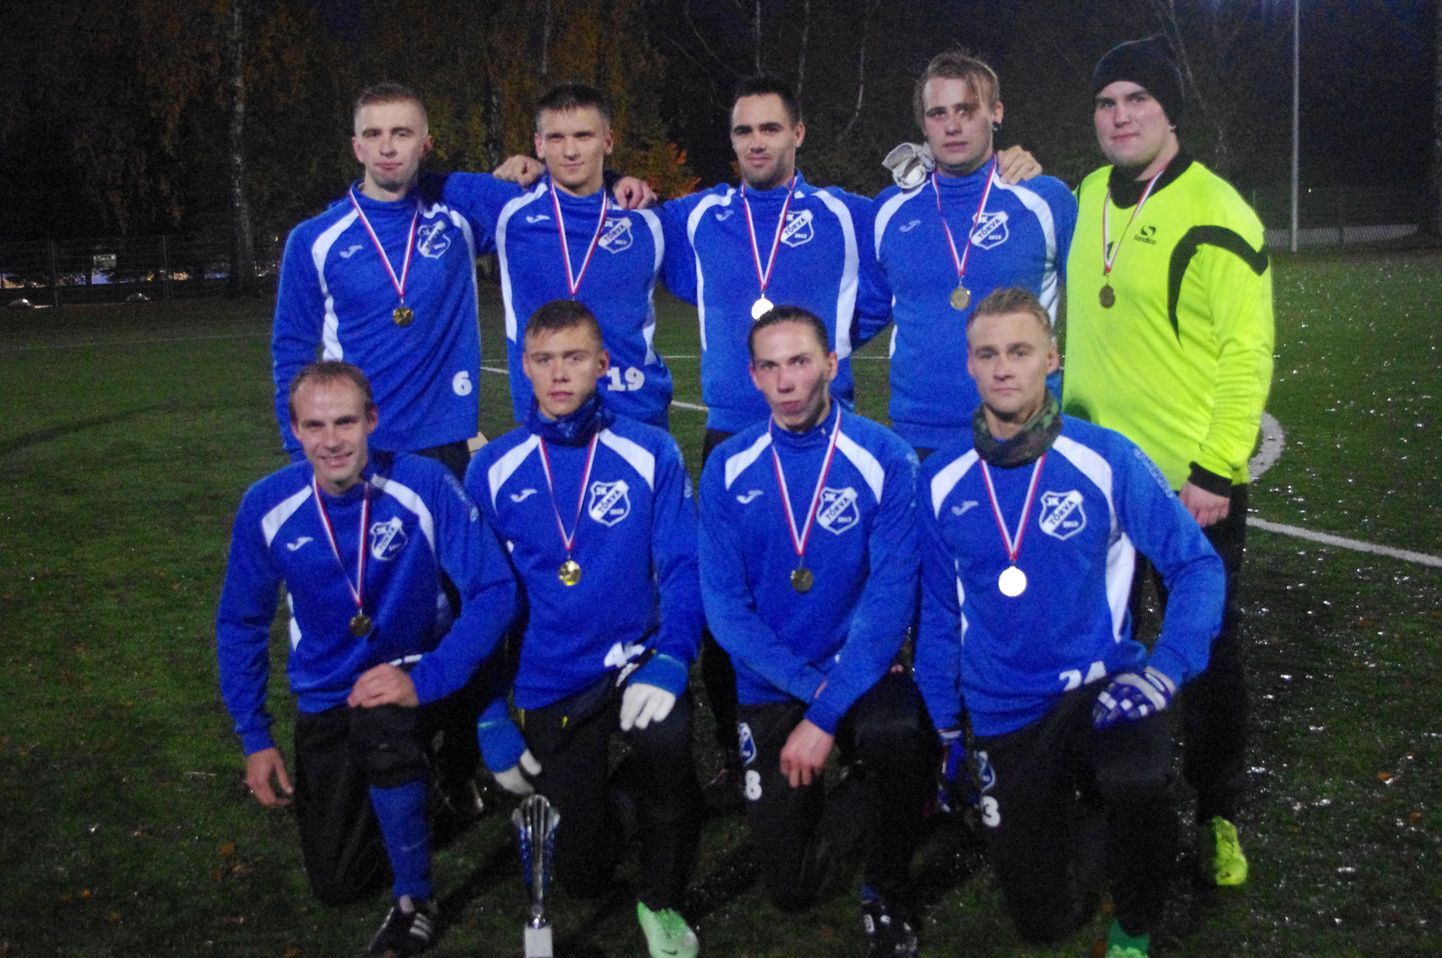 Triobeti aastalõputurniiril, kus mängisid Eesti jalgpalli meistrivõistluste teise liiga piirkondade 1.–8. koha omanikud, saavutasid Tõrva jalgpalliklubi mehed suurepärase neljanda koha.